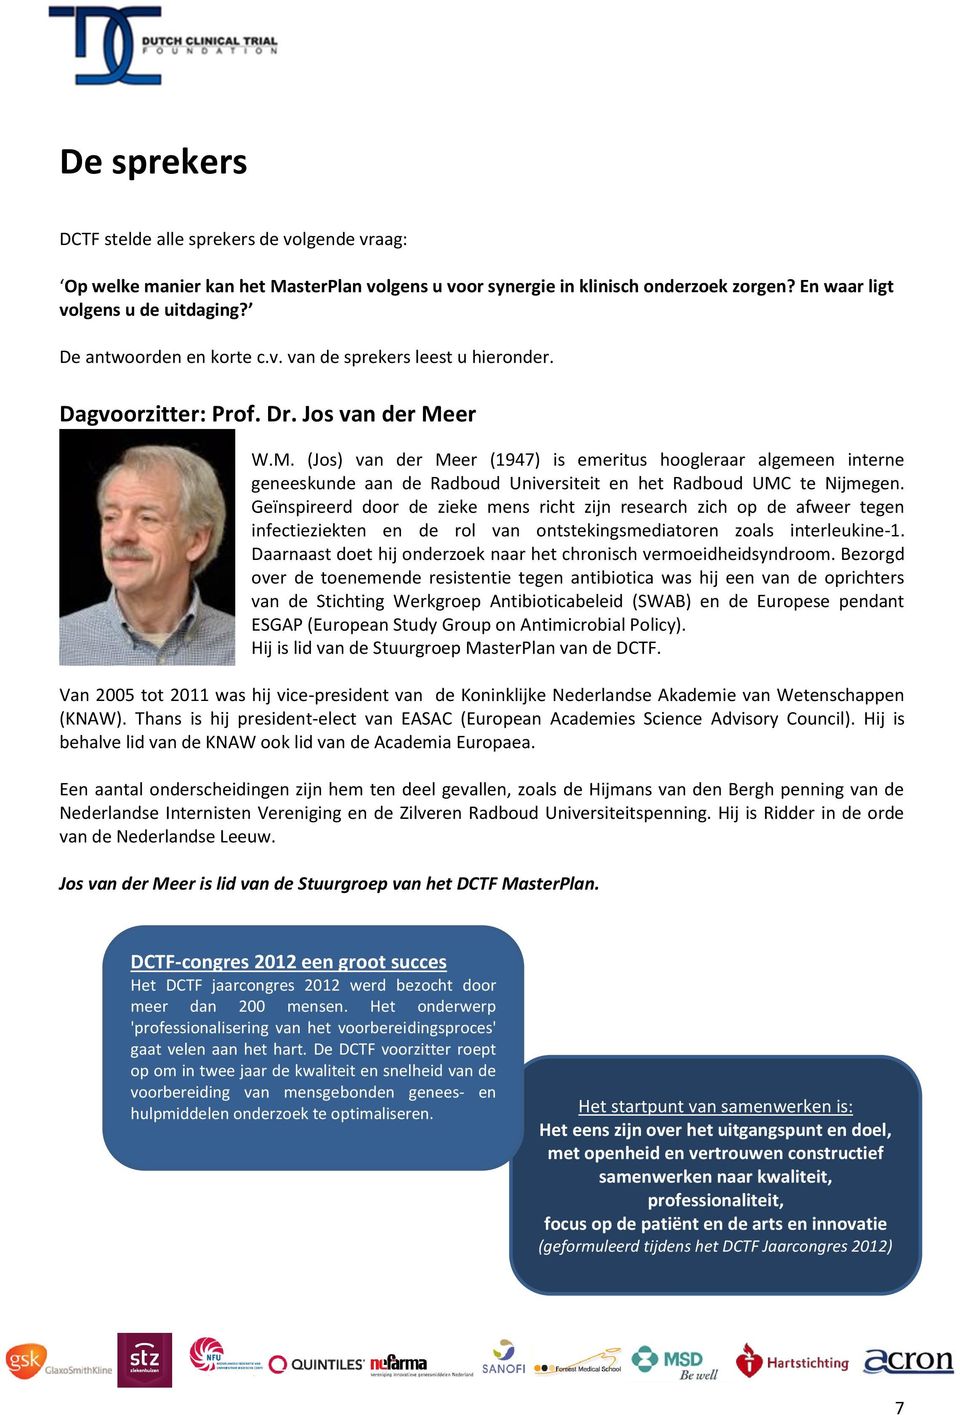 er W.M. (Jos) van der Meer (1947) is emeritus hoogleraar algemeen interne geneeskunde aan de Radboud Universiteit en het Radboud UMC te Nijmegen.